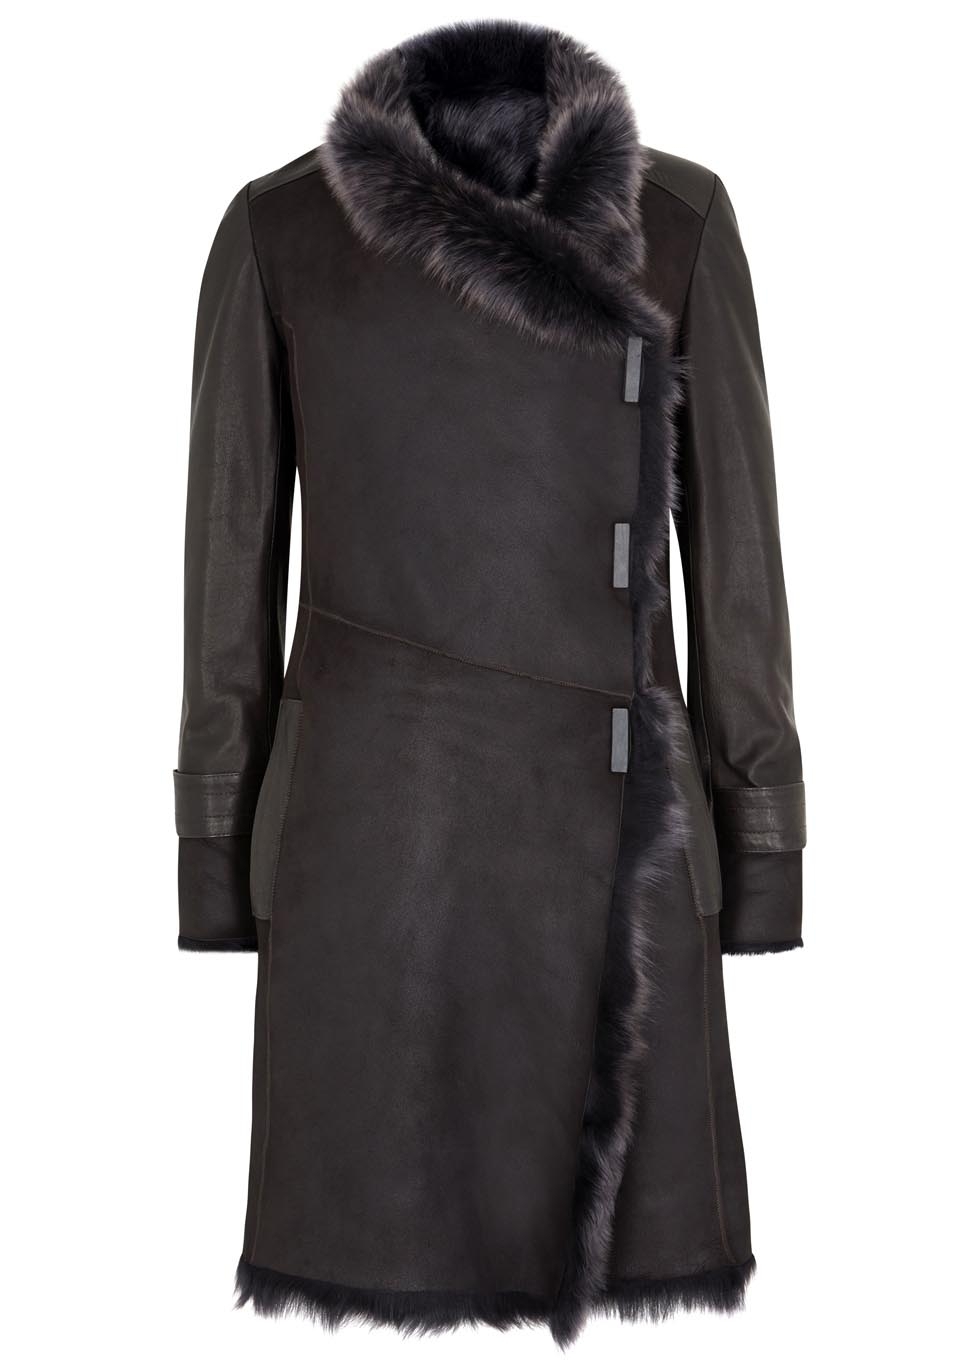 Dark brown shearling coat